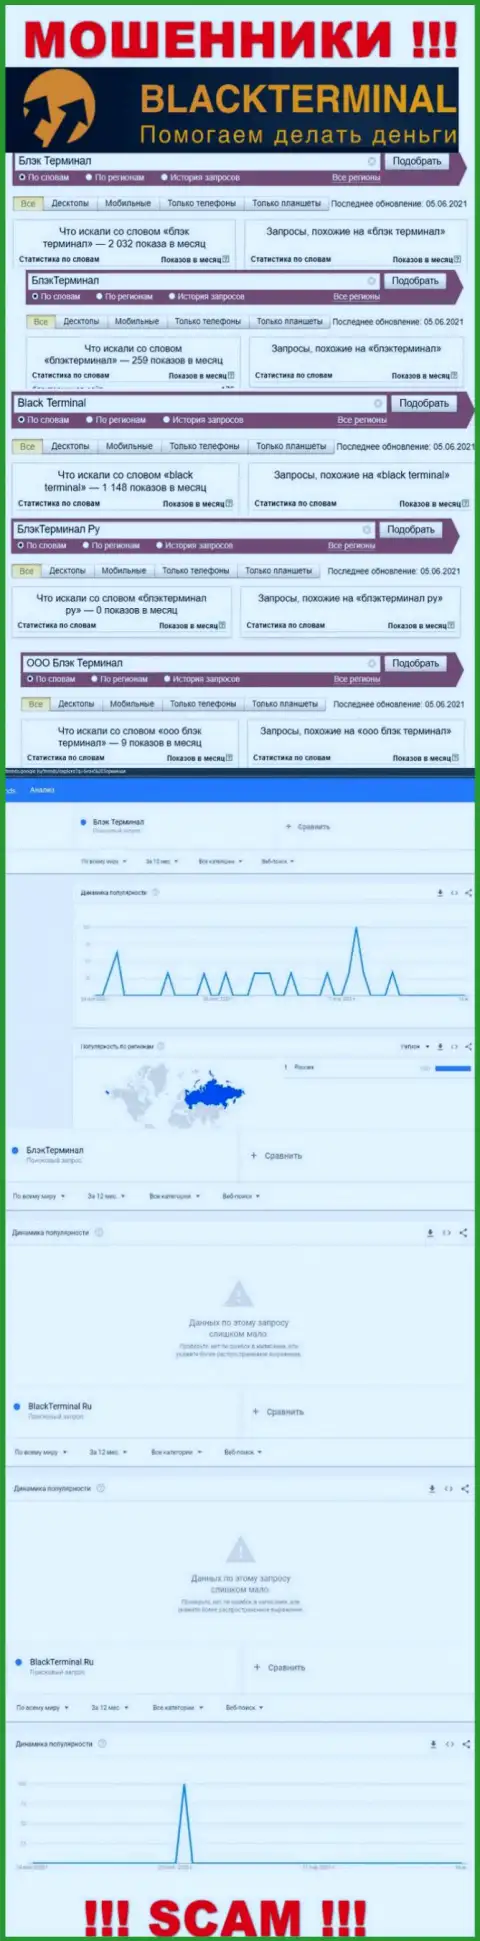 Число онлайн запросов сведений о мошенниках BlackTerminal Ru во всемирной паутине